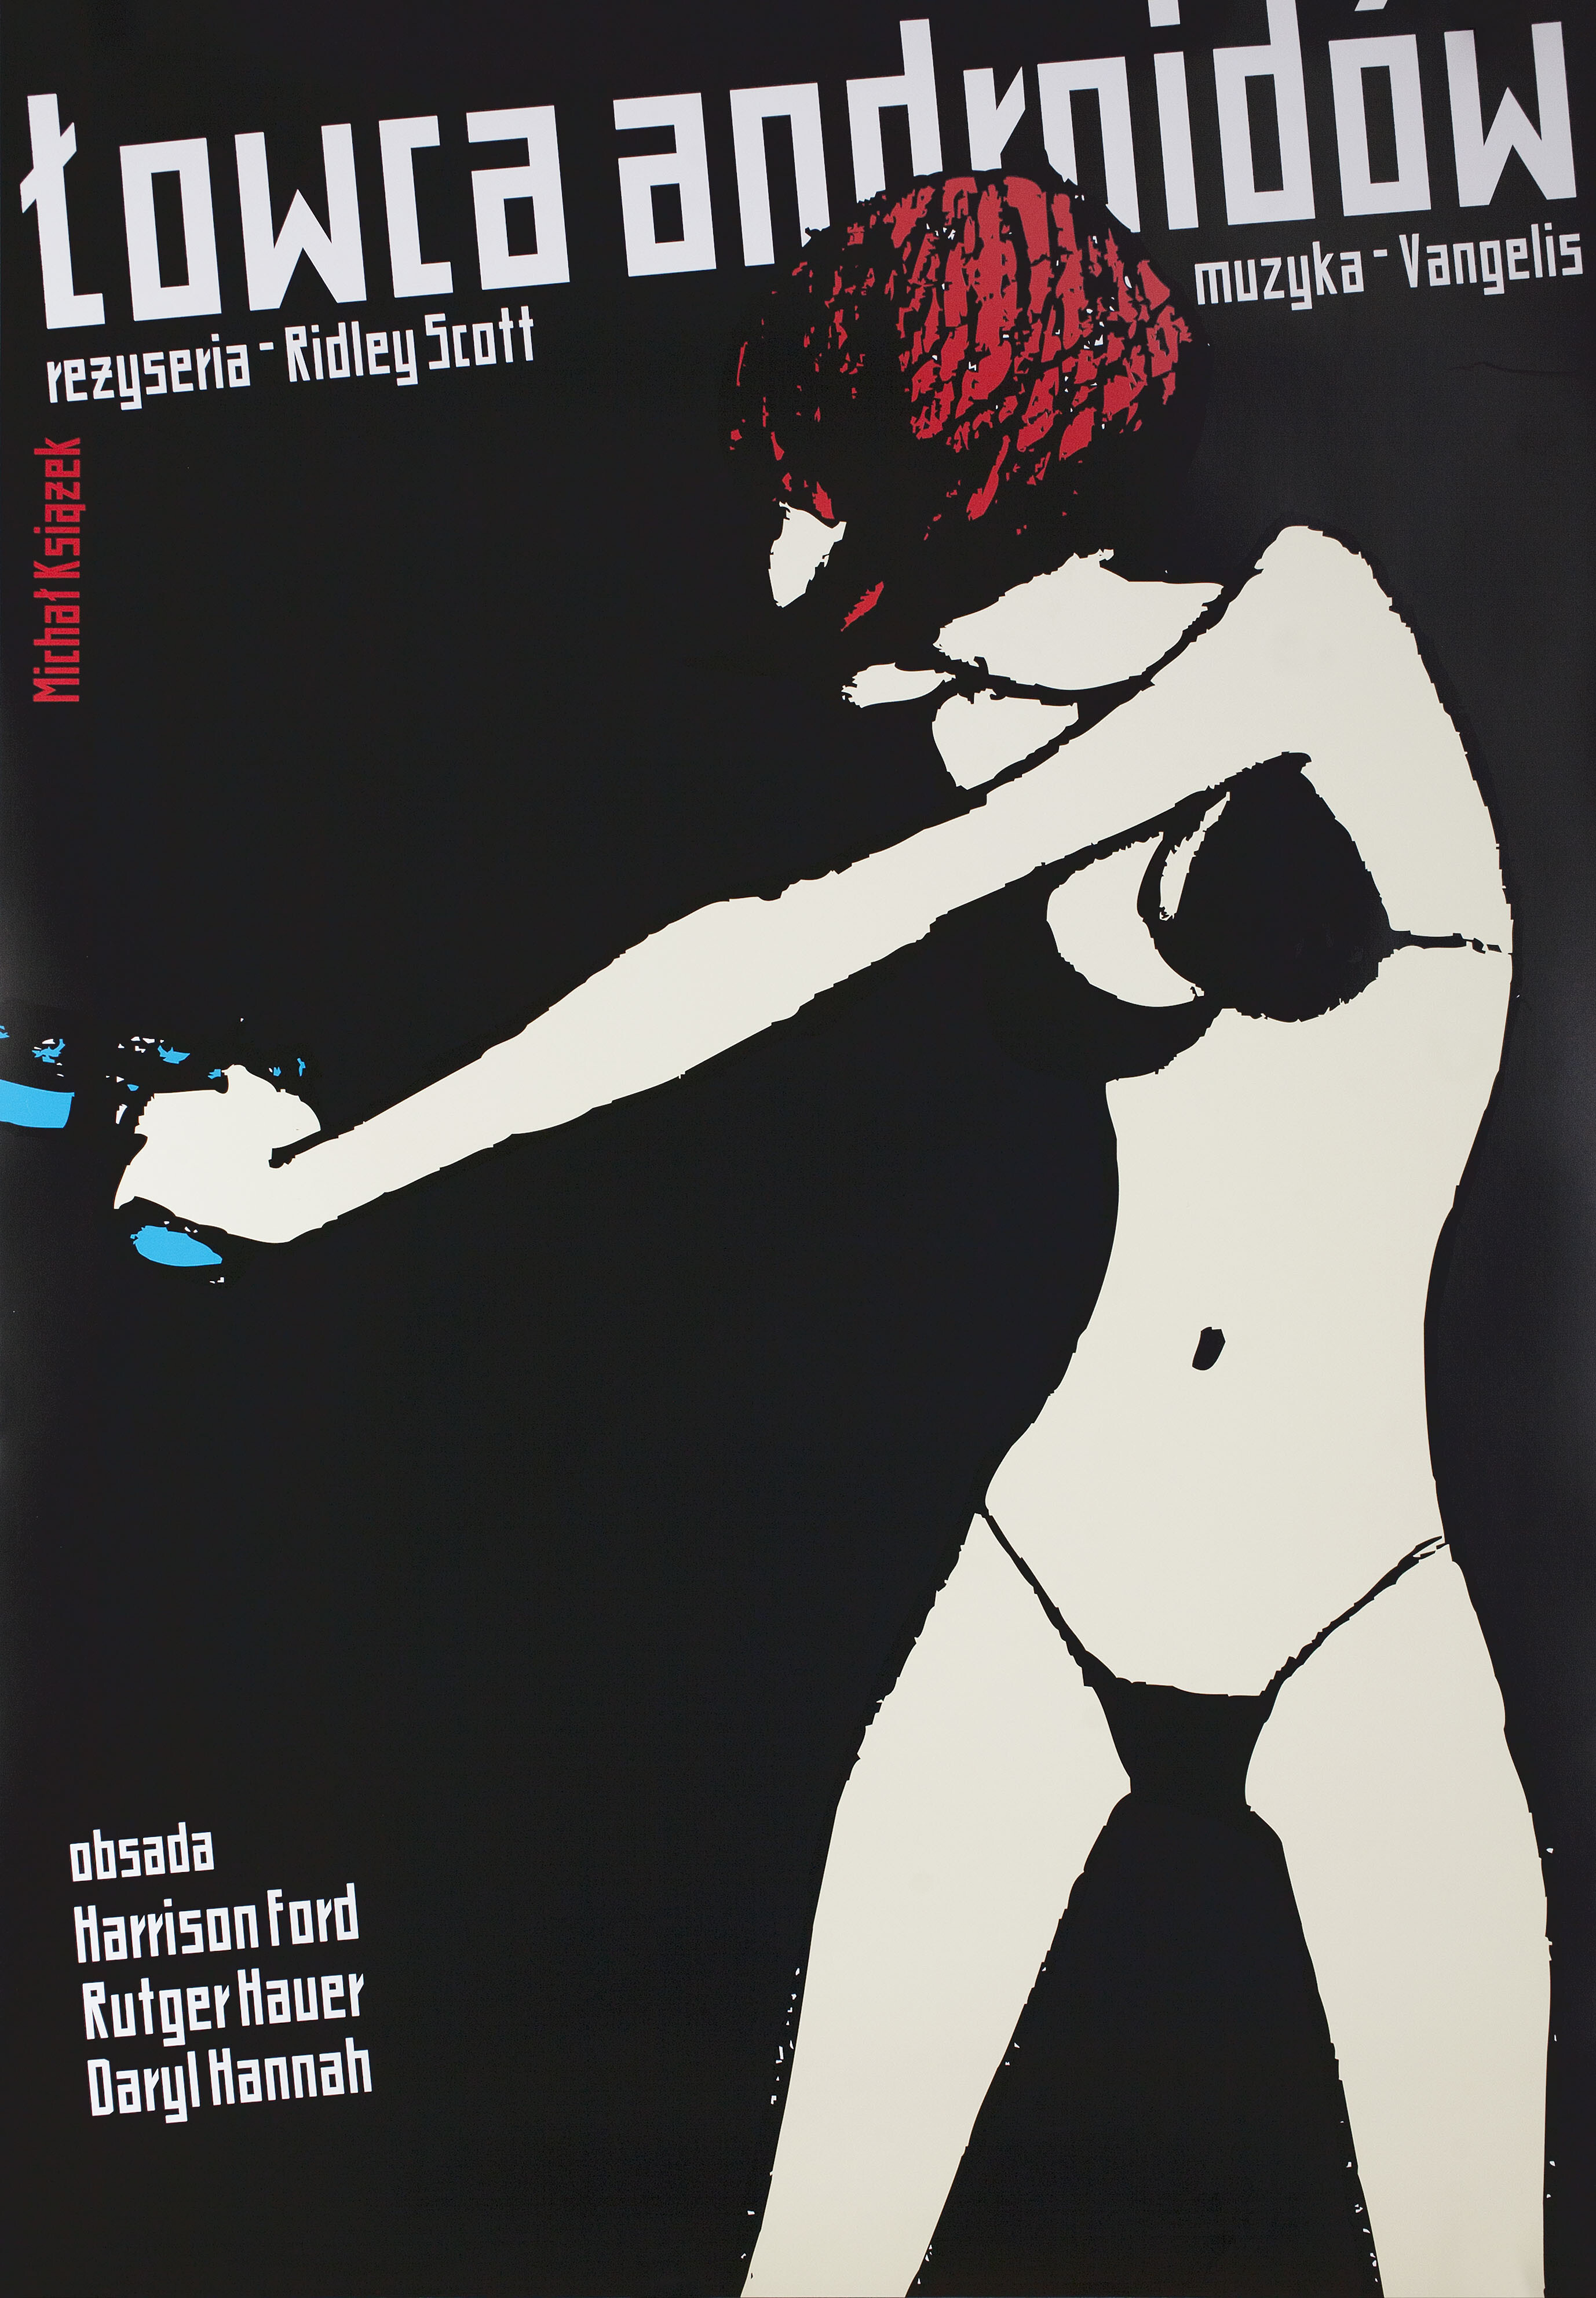 Бегущий по лезвию (Blade Runner, 1982), режиссёр Ридли Скотт, польский плакат к фильму, 2006 год, автор Михал Ксязек